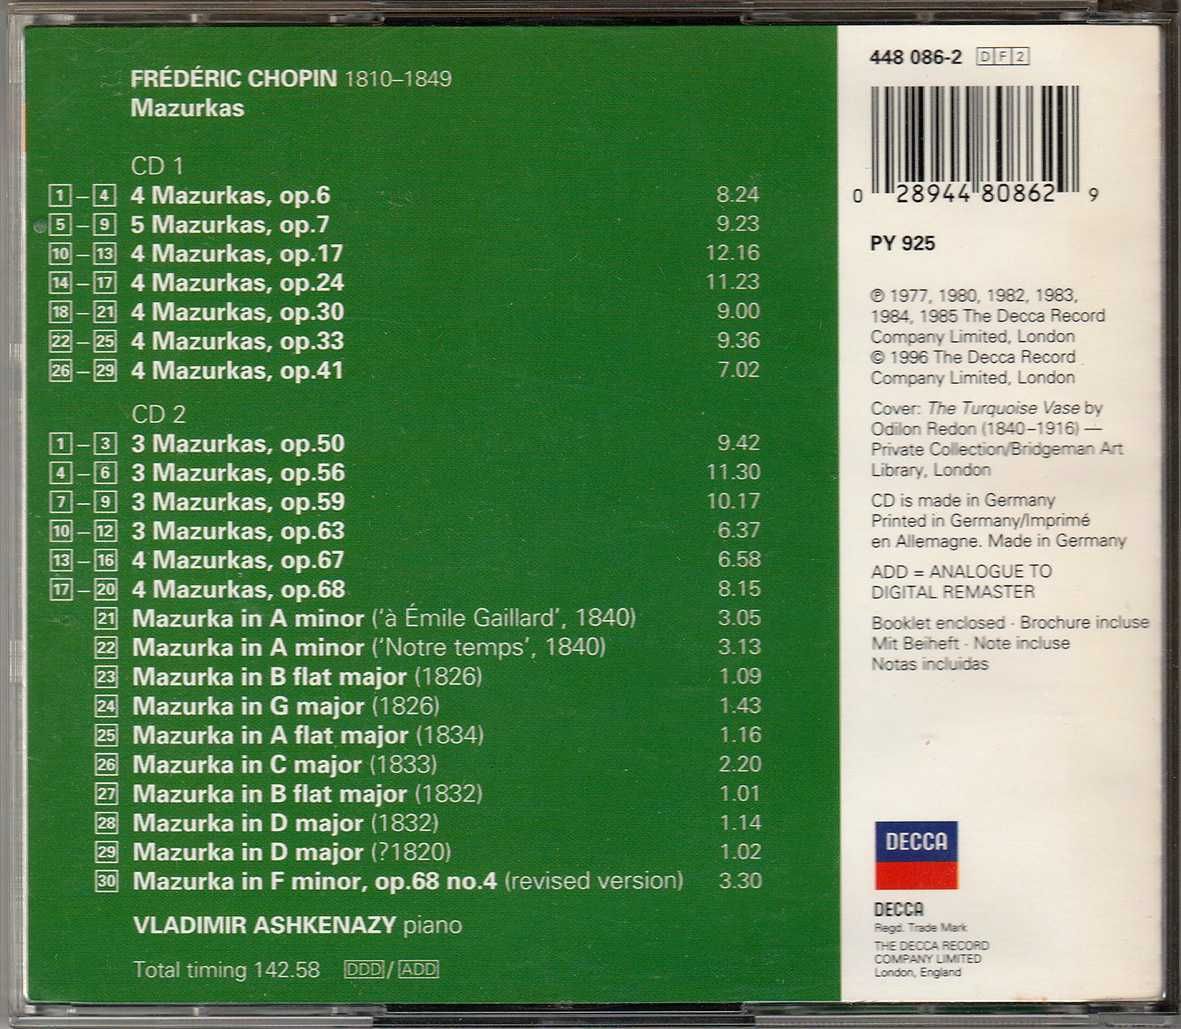 CD duplo Chopin - Mazurkas / Vladimir Ashkenazy